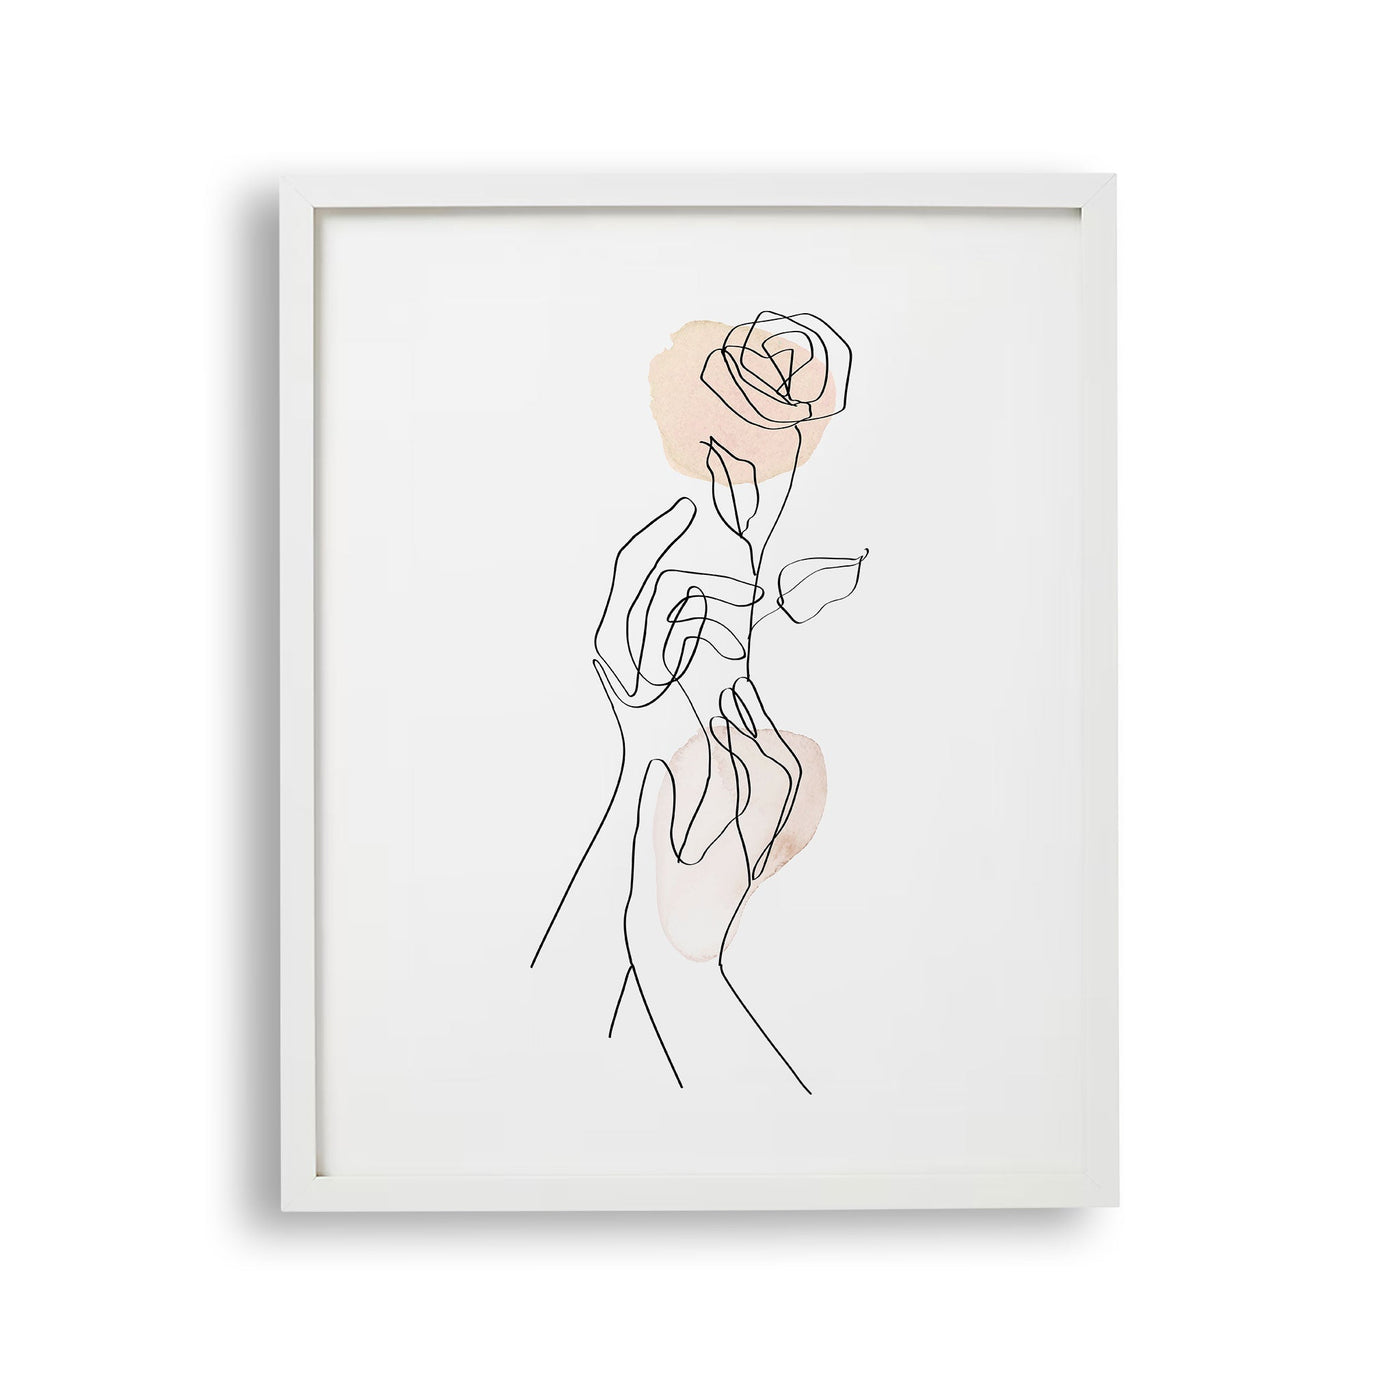 tabloul-cu-rama-care-ilustreaza-un-desen-line-art-simplu-si-elegant-cu-2-maini-tinand-un-trandafir-gentle-gesture